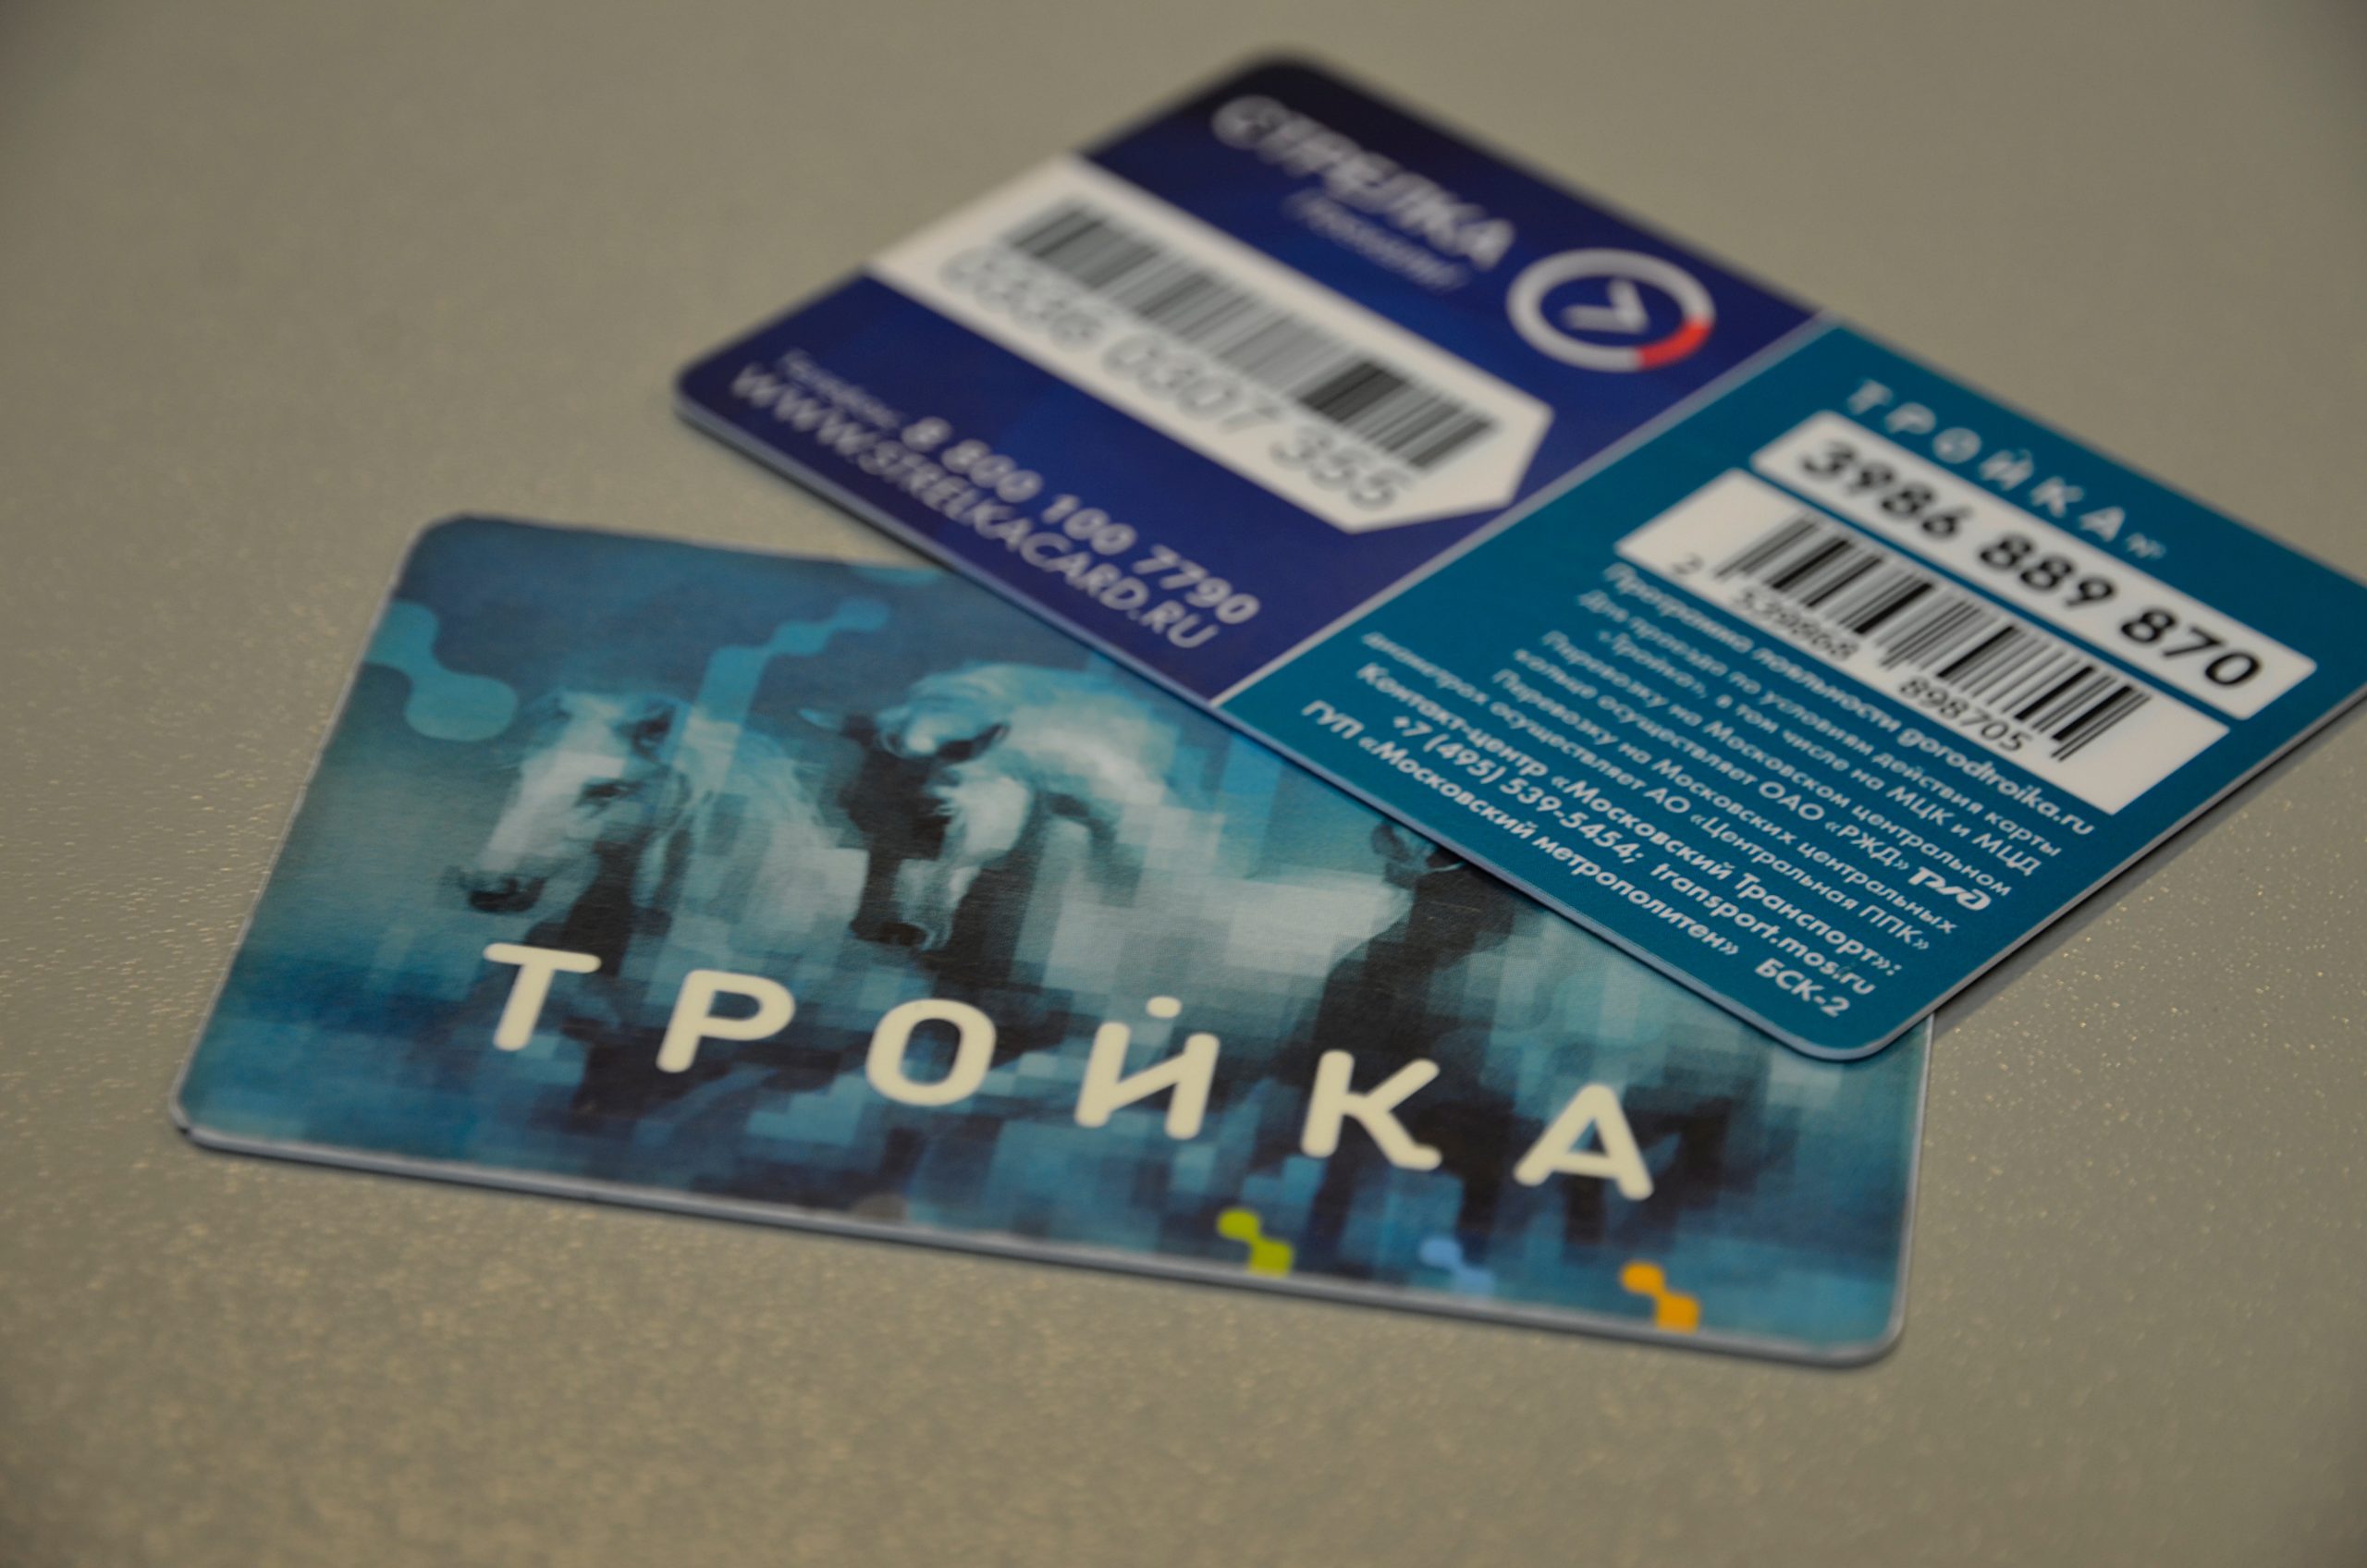 Бесплатные пересадки на наземный транспорт стали доступны в Москве